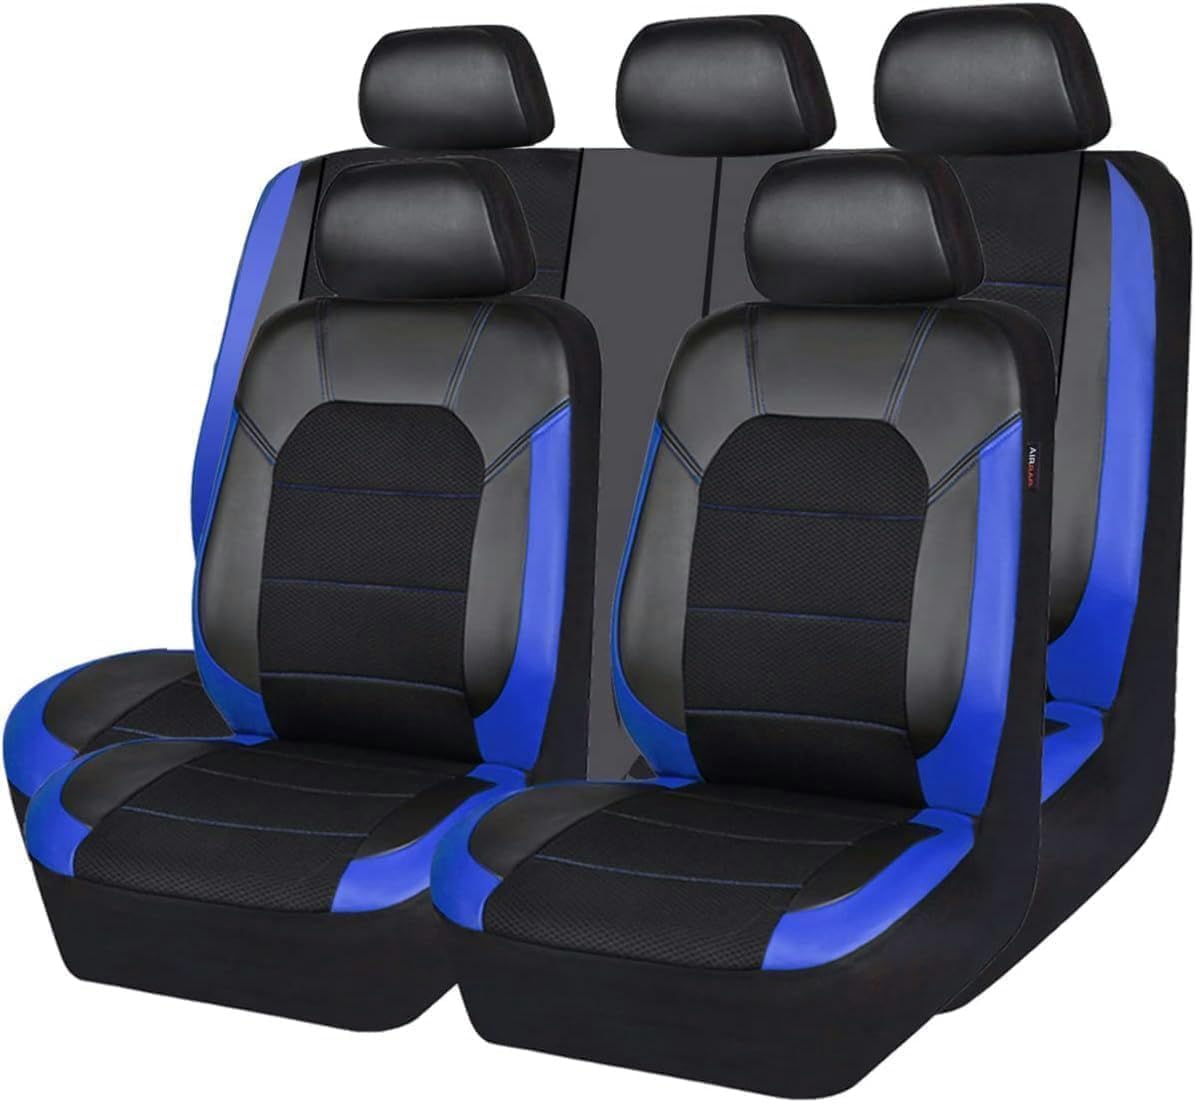 ASTRAE Auto Leder SitzbezüGe FüR P-eugeot 508 Second Generation 2019 2020 2021 2022 2023 2024,rutschfest Wasserdicht SitzbezüGe,Komfortables AutositzbezüGe Komplettes,Auto Innenraum ZubehöR,B/Blue von ASTRAE